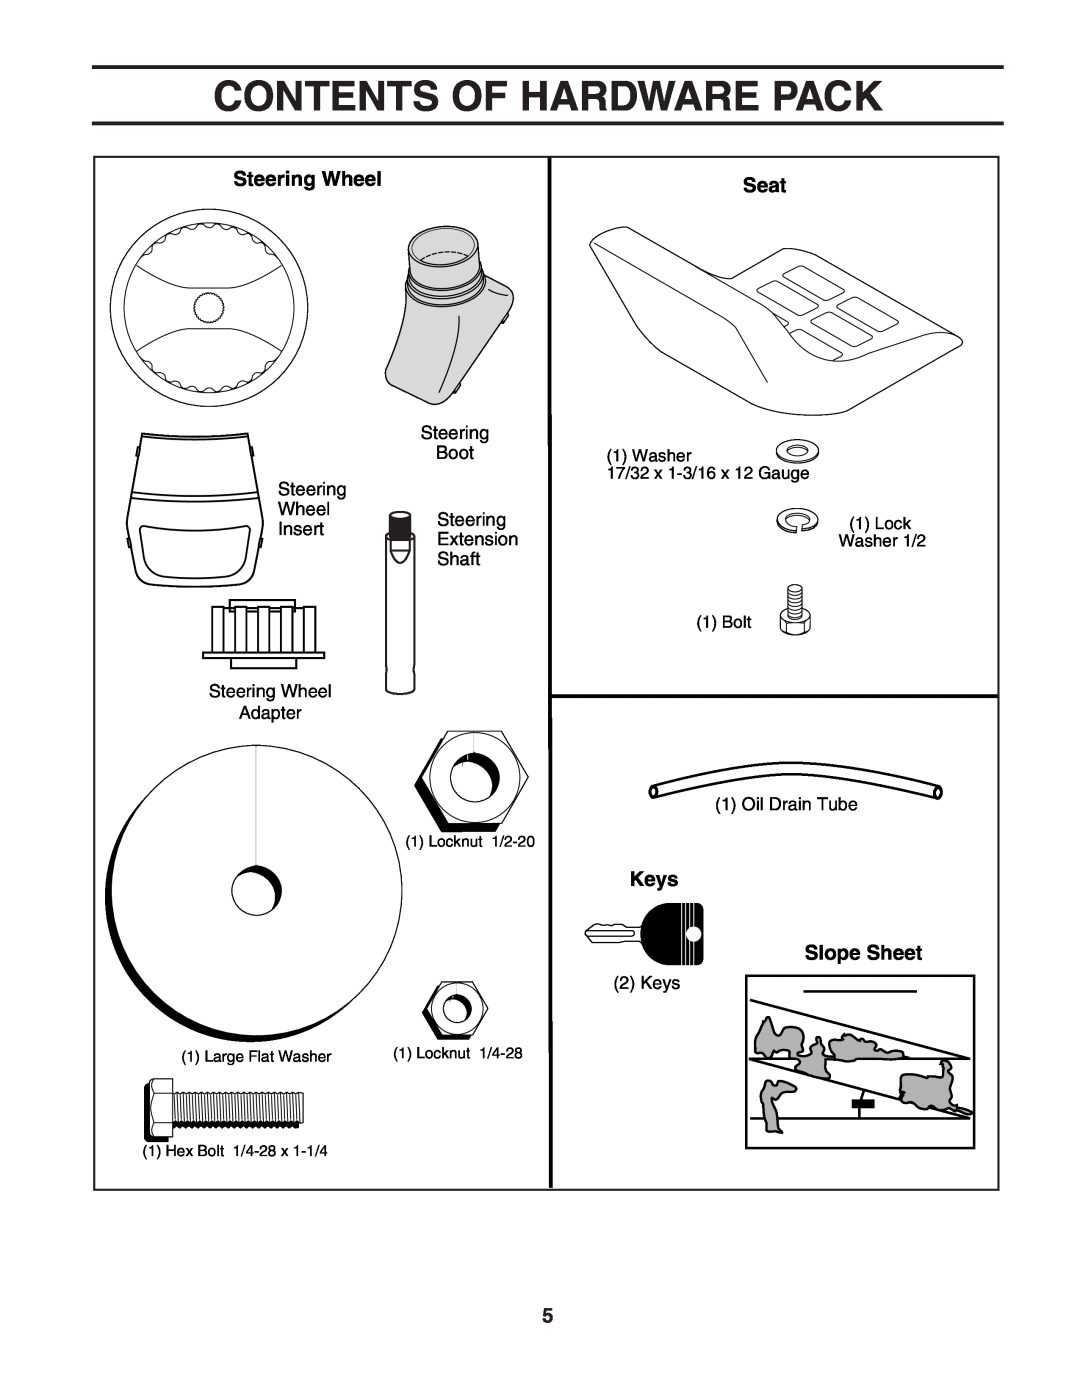 Poulan PO1742STA manual Contents Of Hardware Pack, Steering Wheel, Seat, Keys, Slope Sheet 